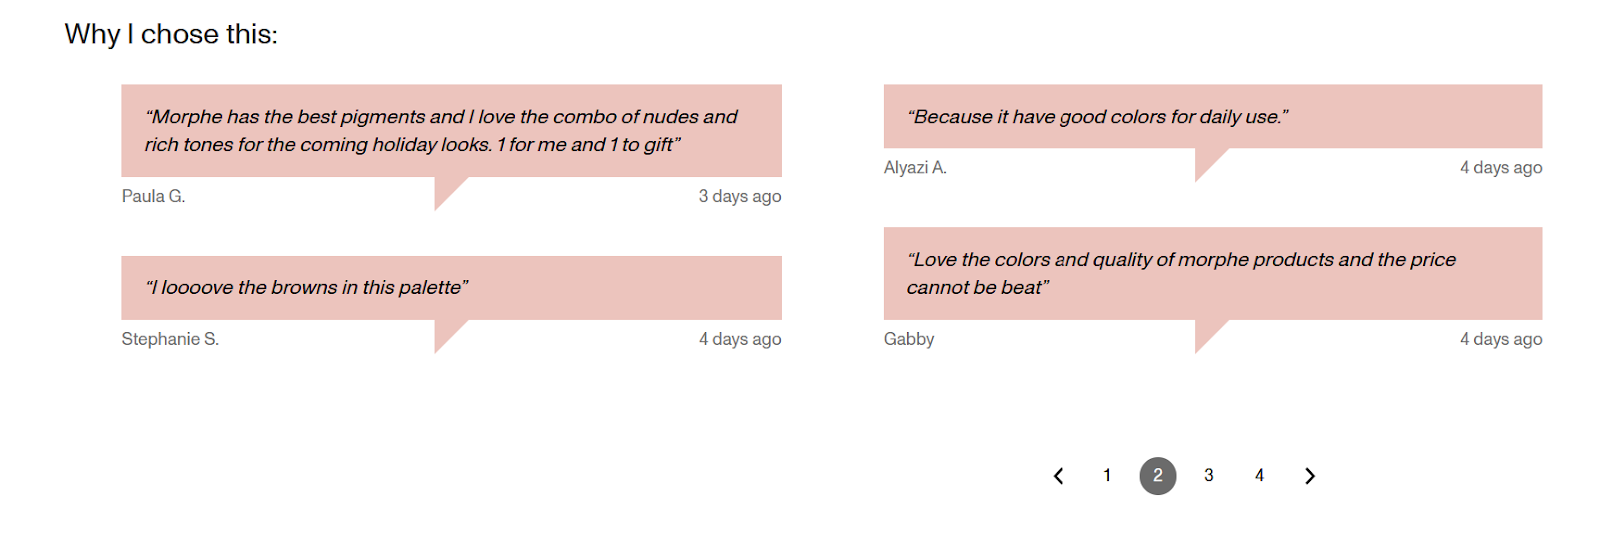 Скриншоты облачков с комментариями к оформлению заказа, в которых рассказывается о причинах покупки палетки для макияжа.